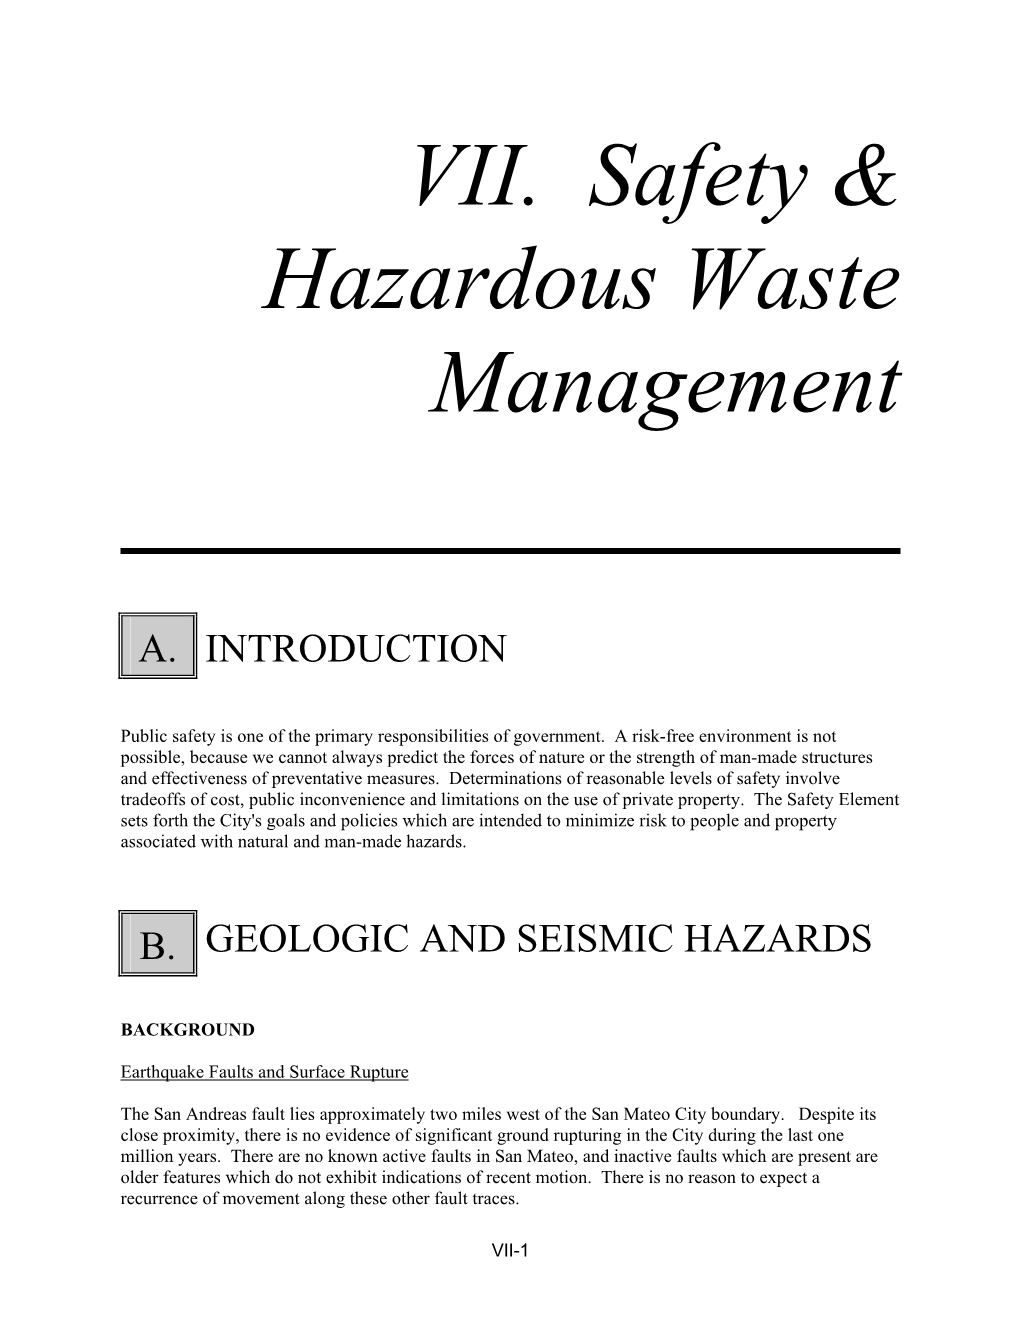 VII. Safety & Hazardous Waste Management